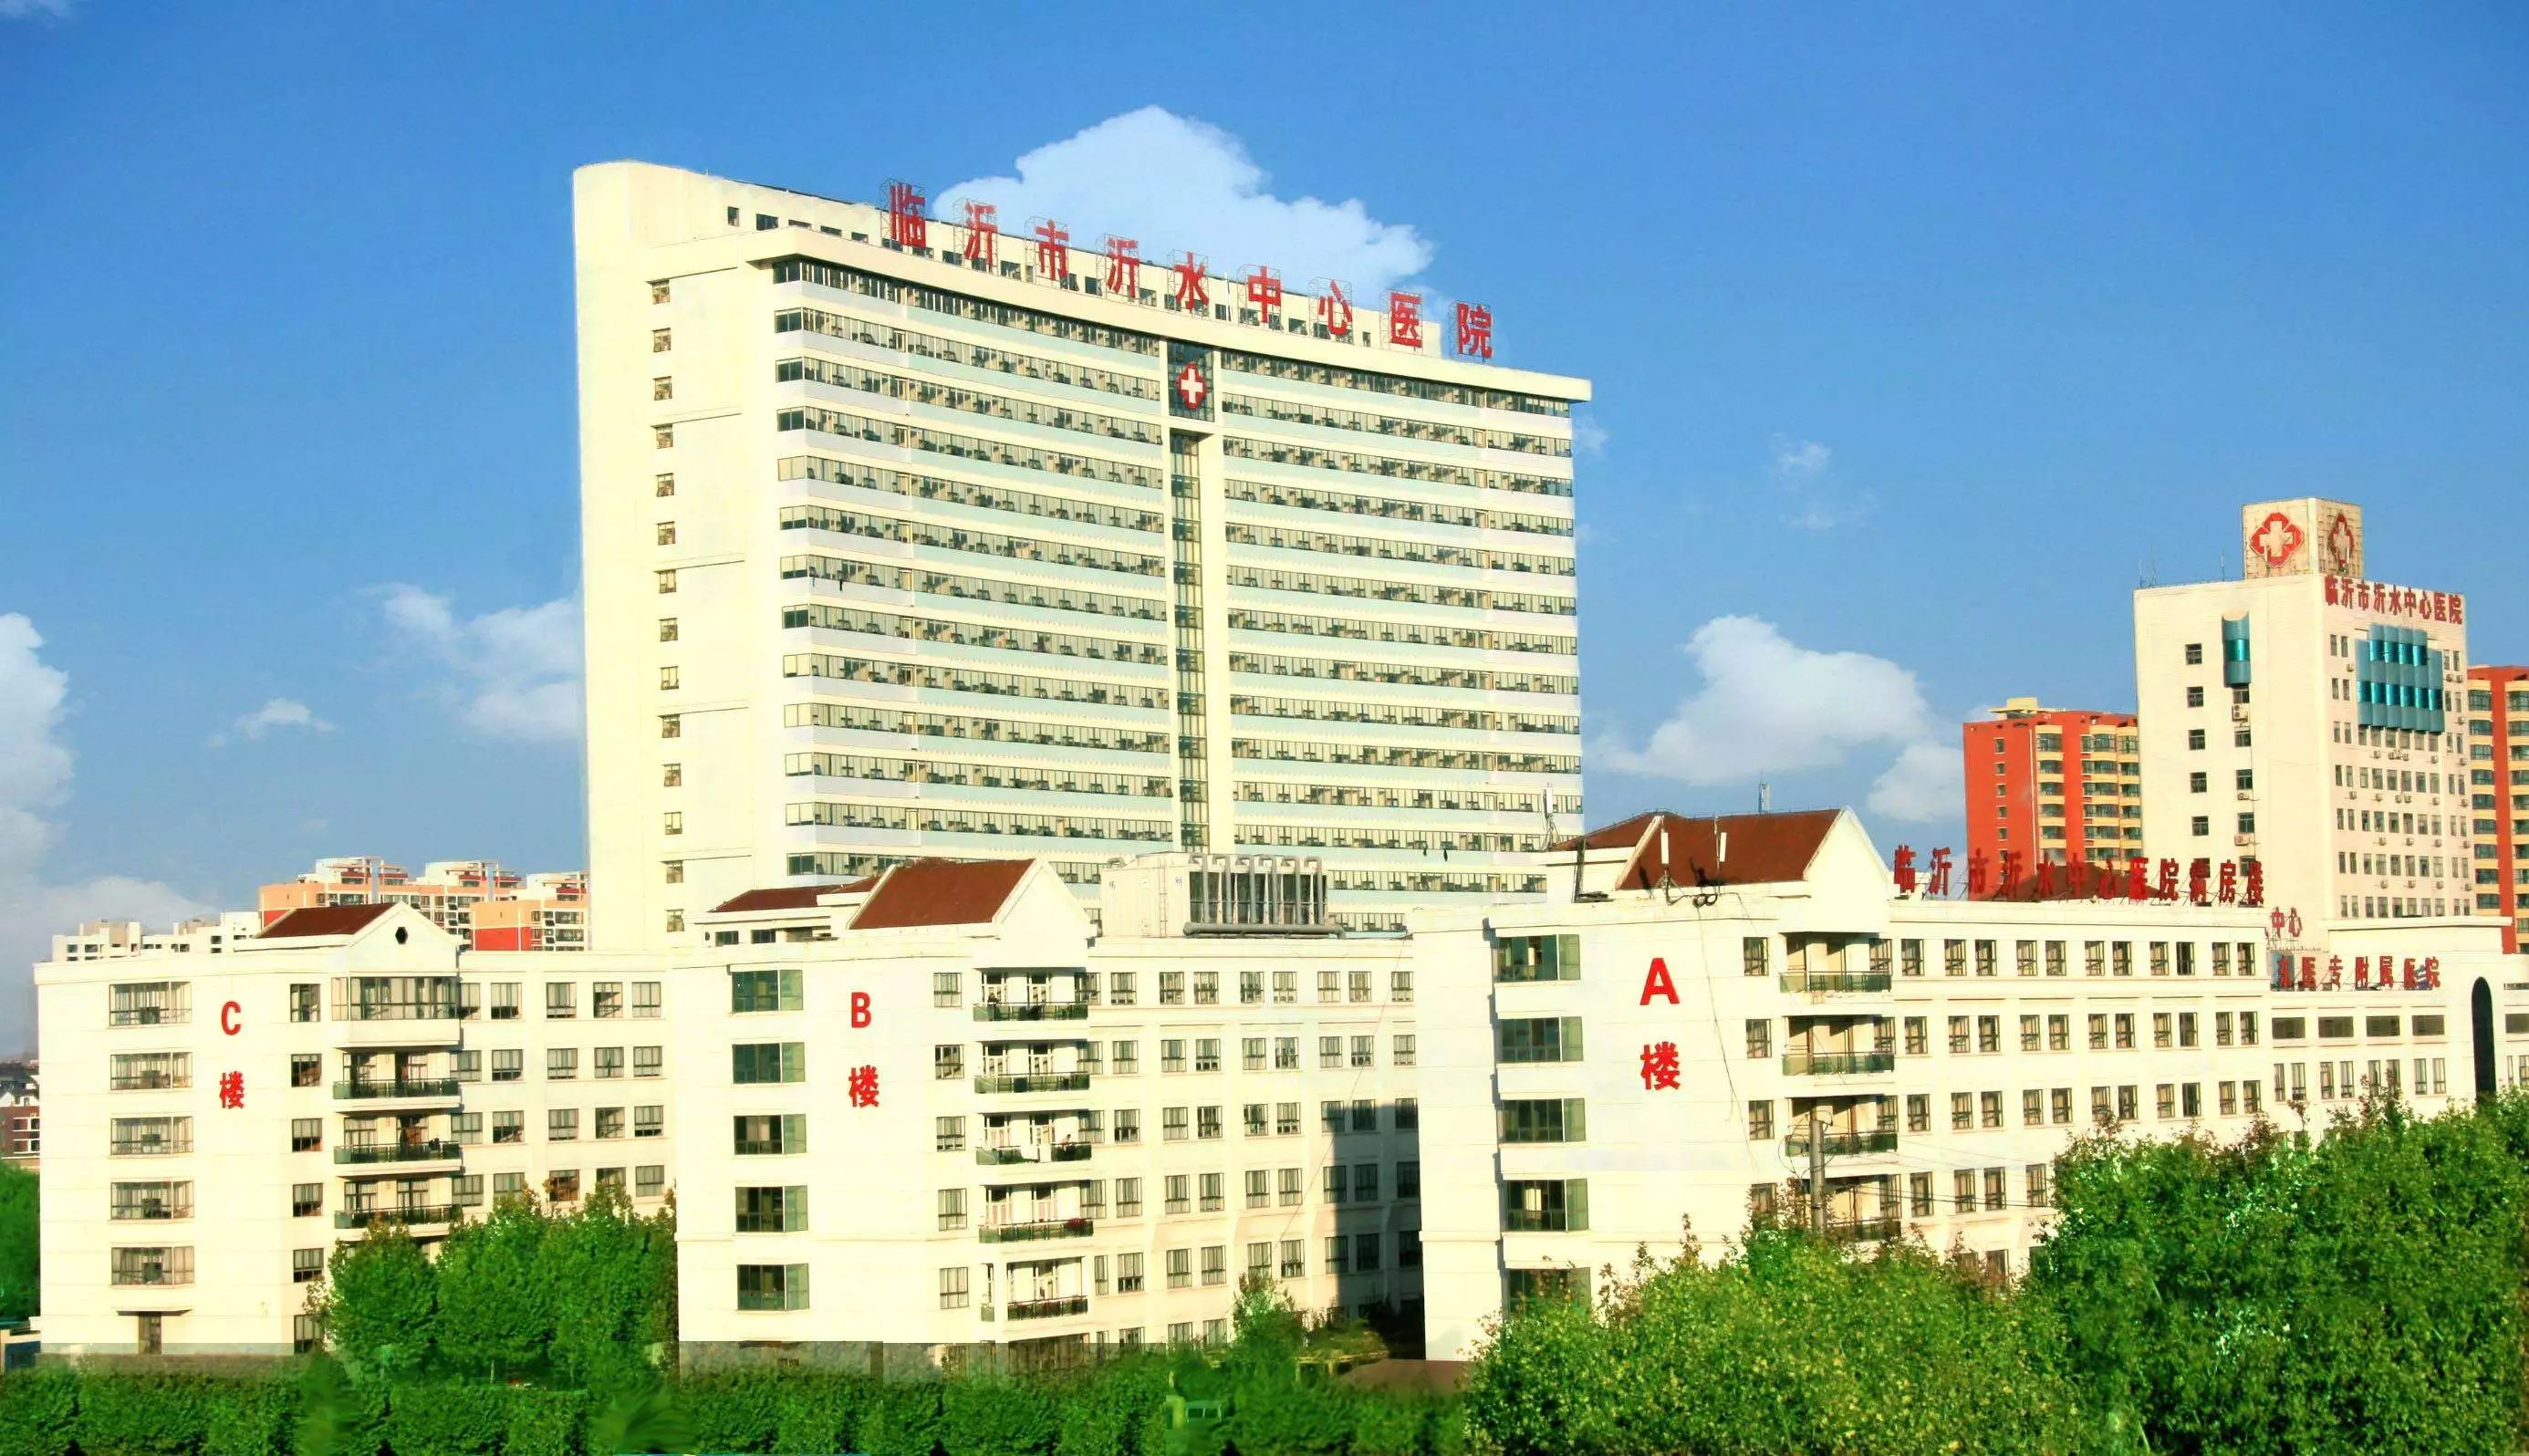 院附属医院,1987年更名为潍坊医学院附属医院,是省卫生厅直属的集医疗